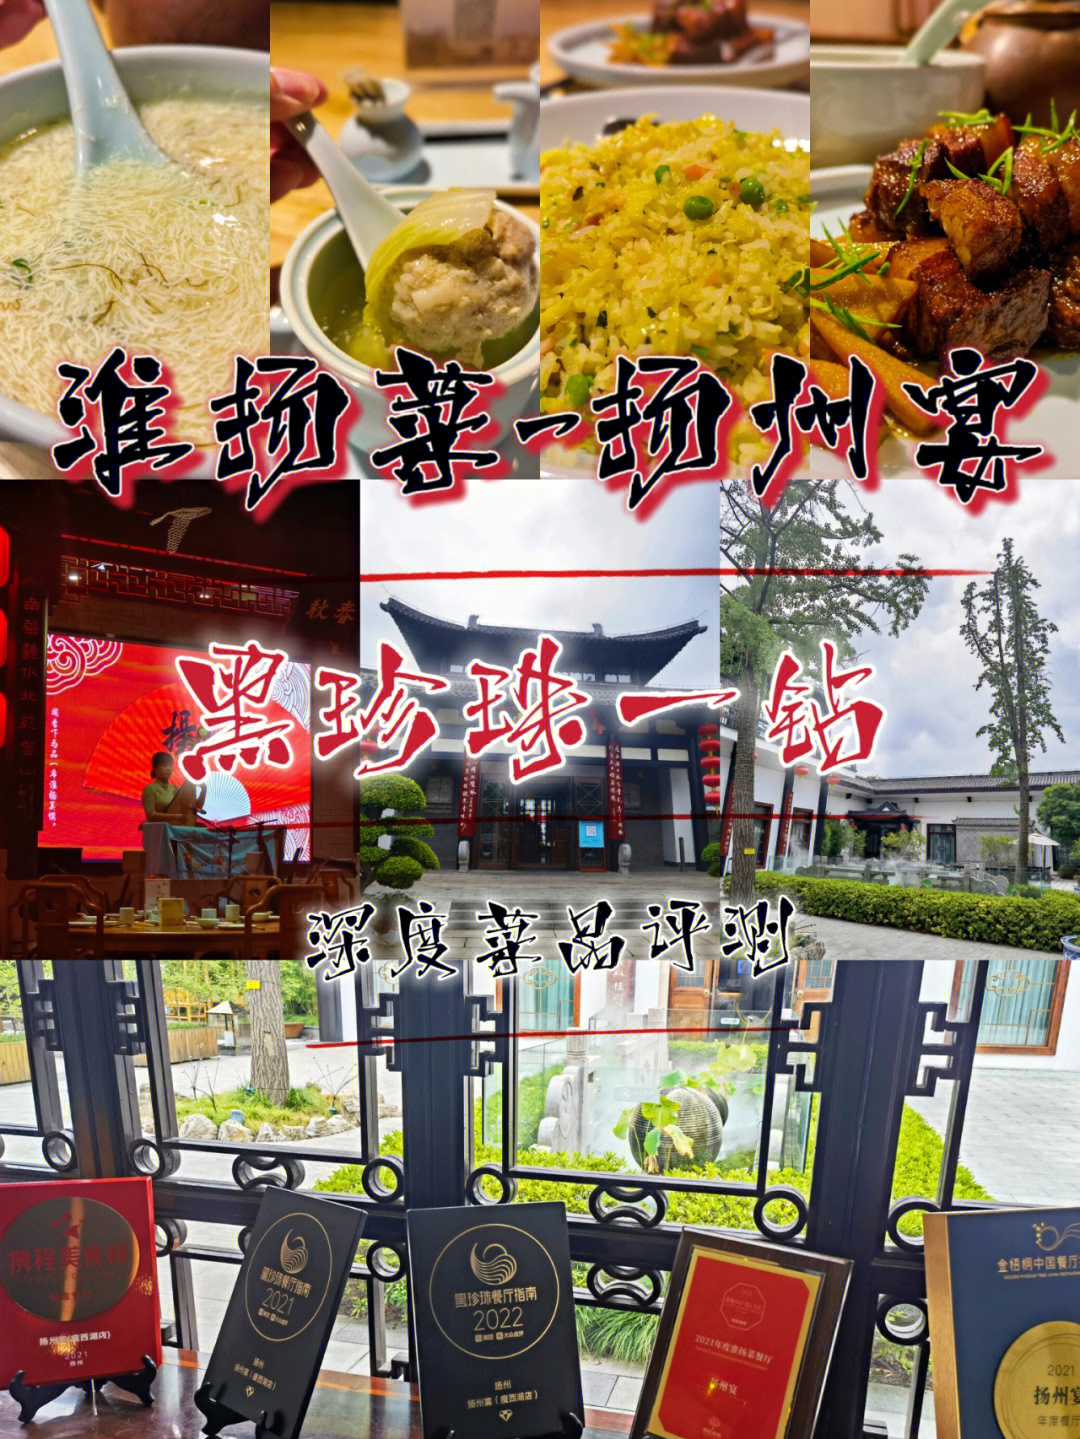 扬州黑珍珠餐厅名单图片